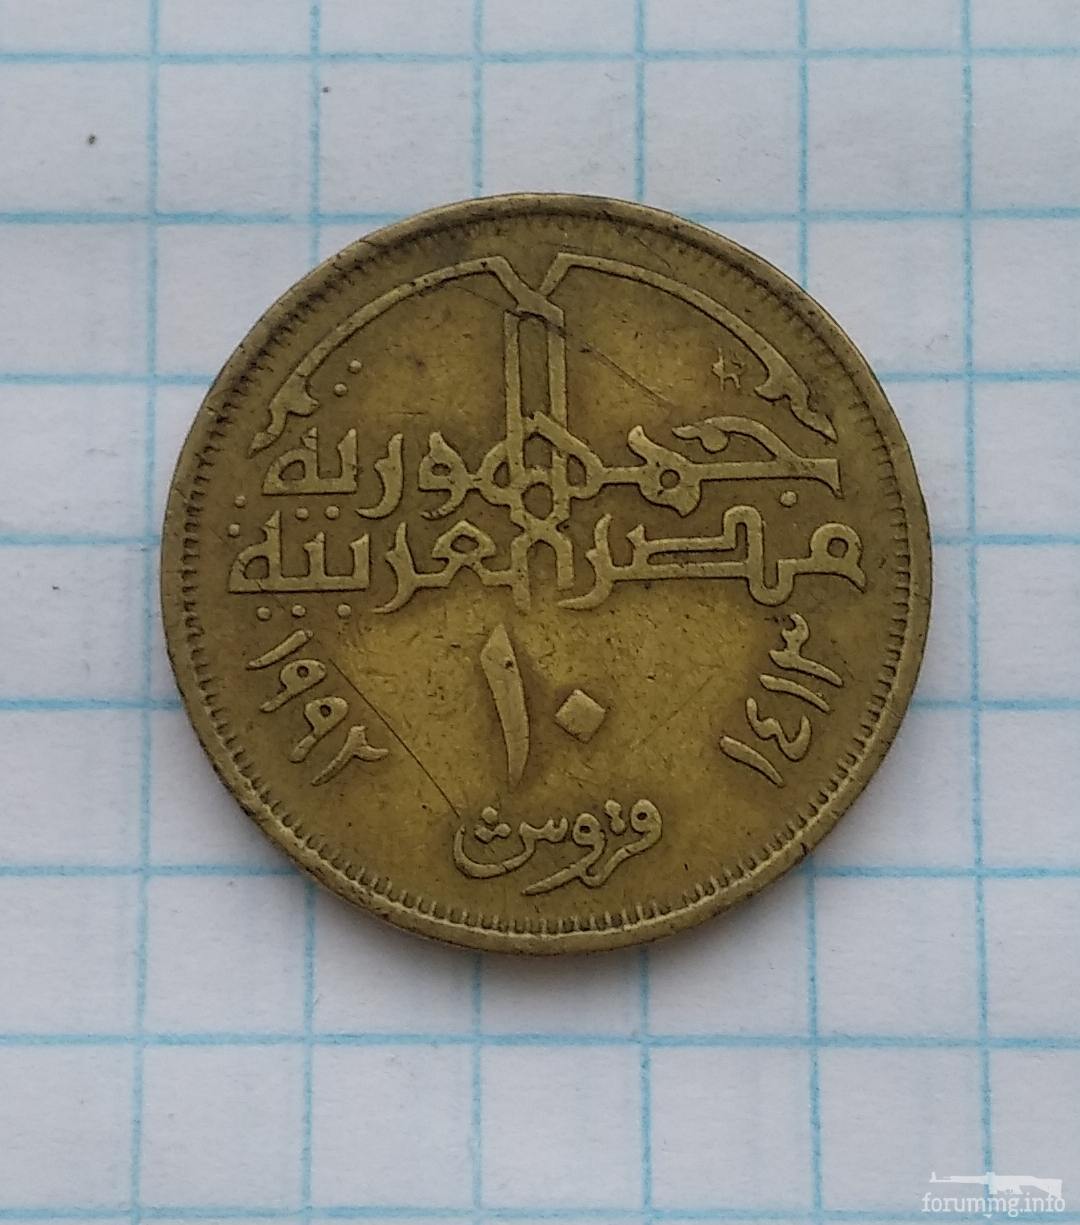 145779 - Монети Єгипту, подарунковий набір.